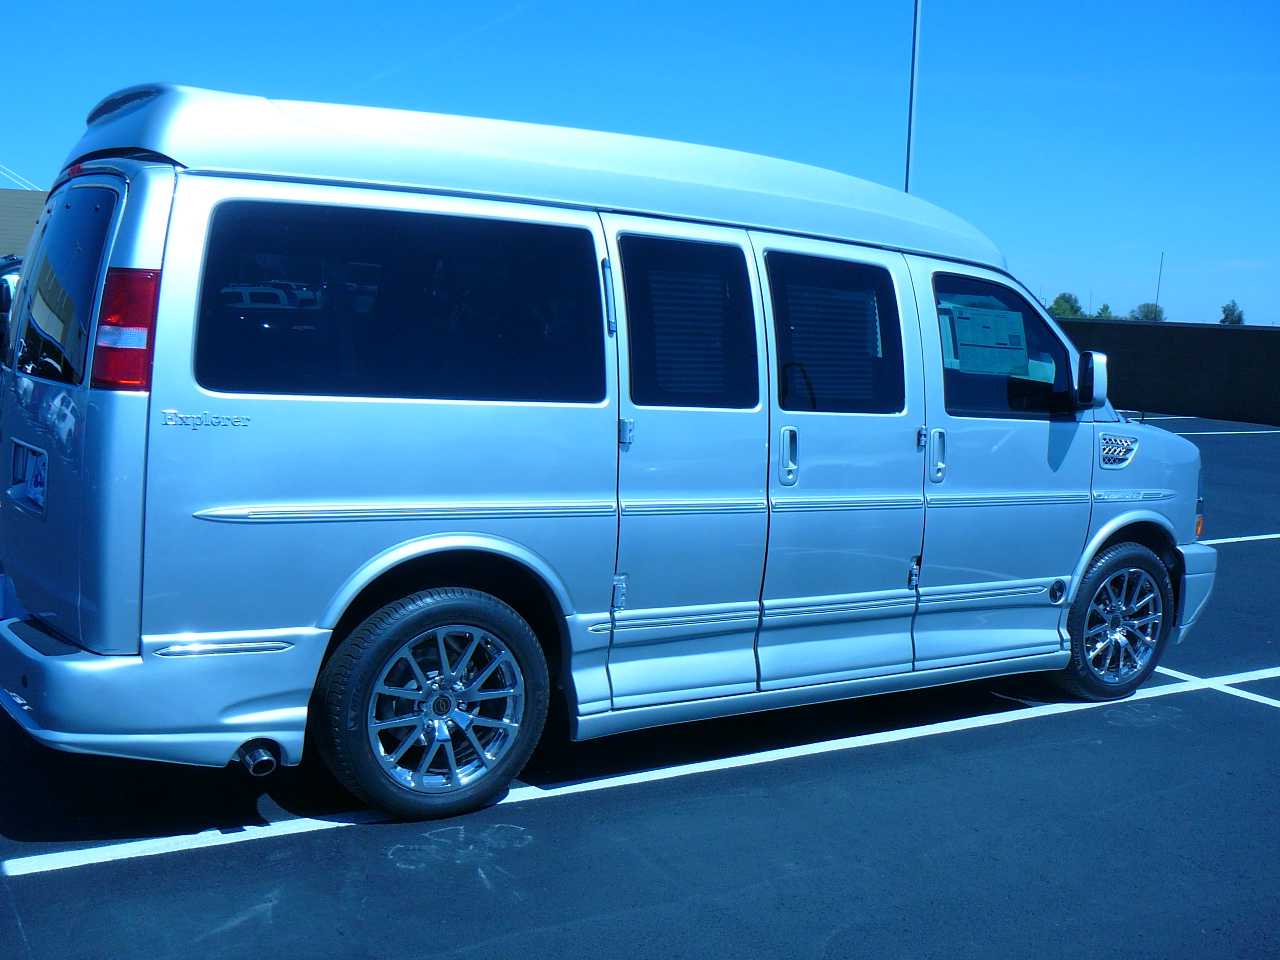 2014 Explorer Van CHEVROLET EXPRESS Silver Ice Metallic Explorer Van Limited SE